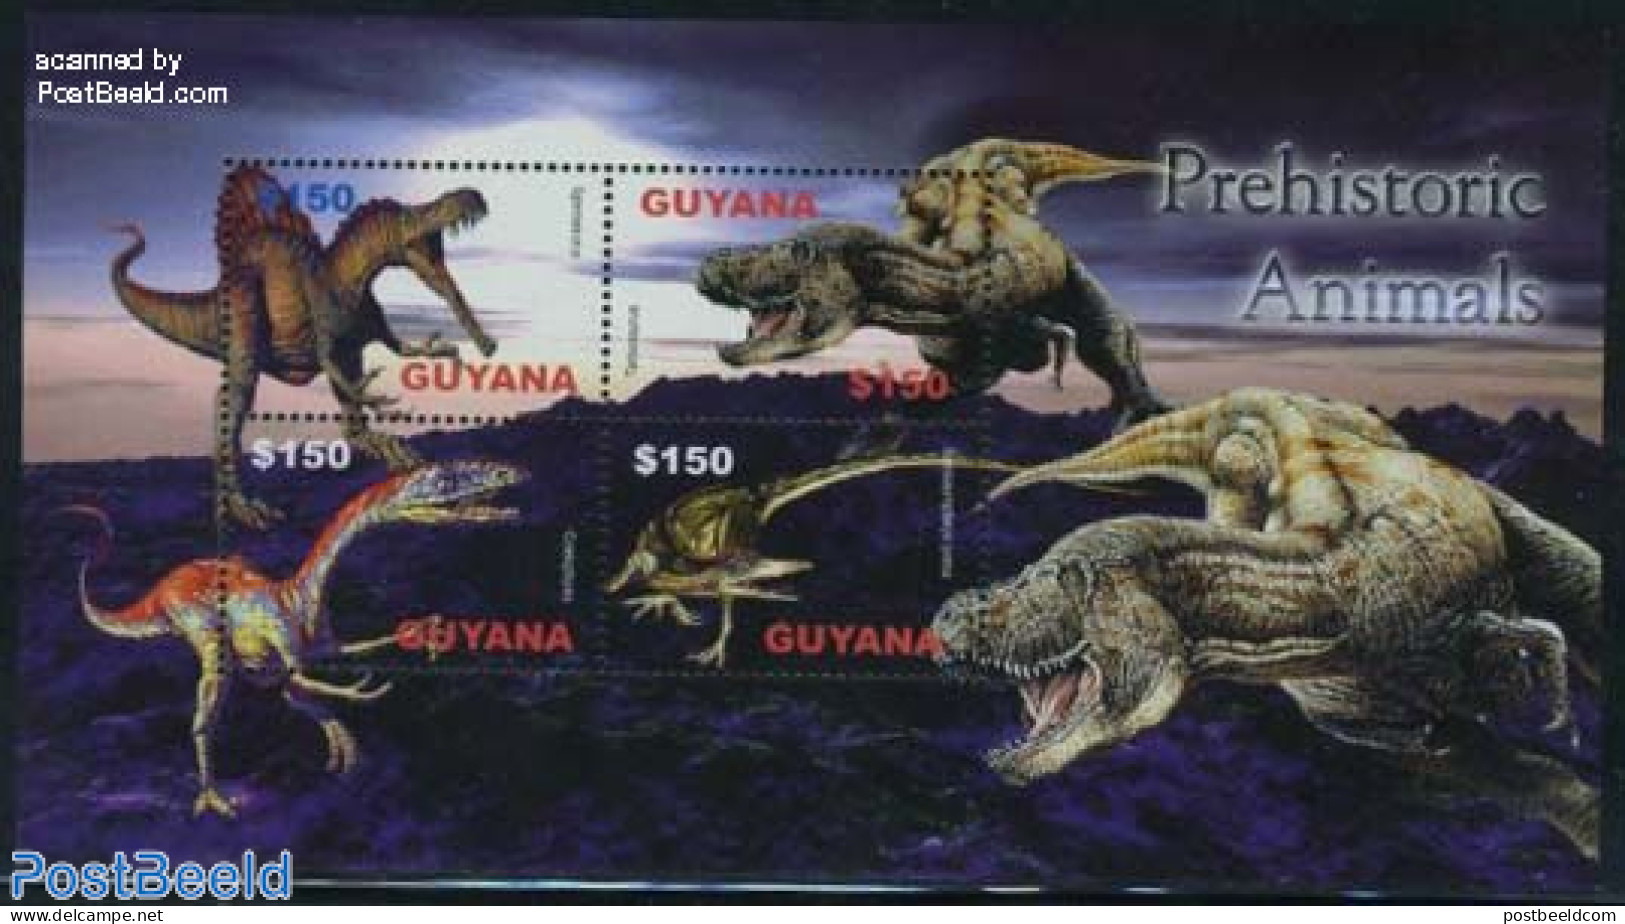 Guyana 2005 Preh. Animals 4v M/s, Spinosaurus, Mint NH, Nature - Prehistoric Animals - Prehistorics